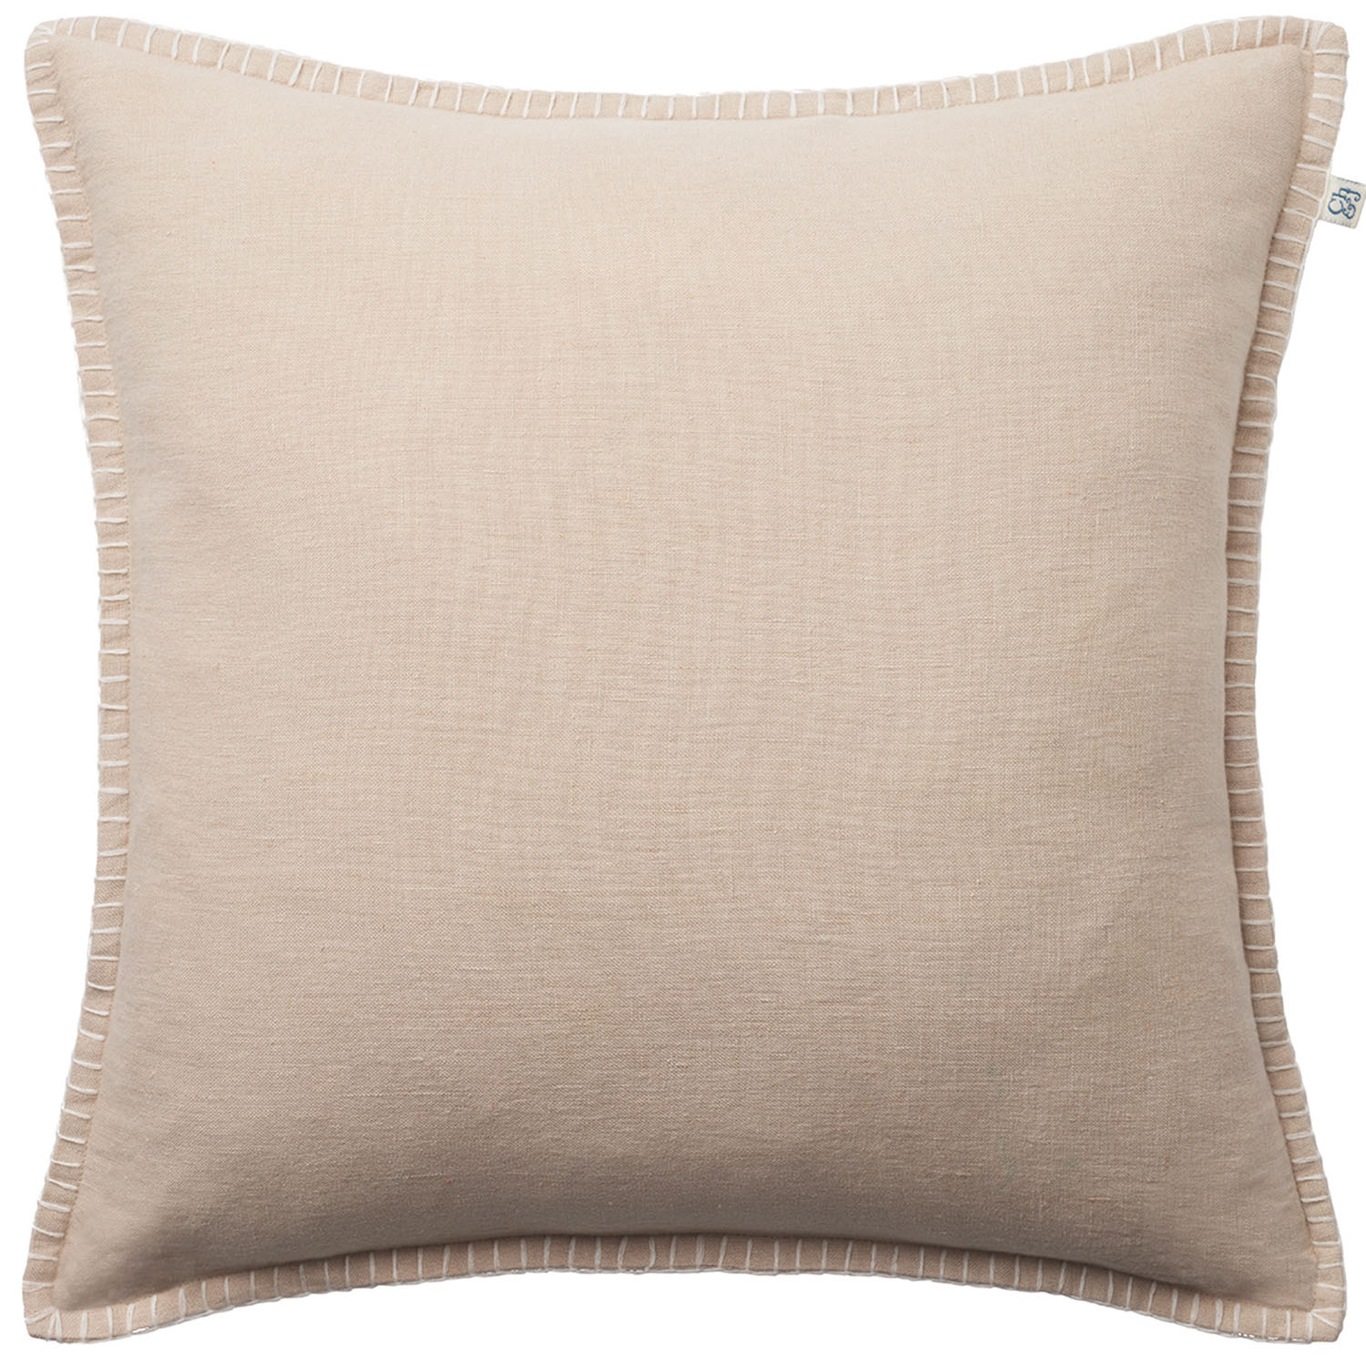 Arun Cushion Cover Tan/Off-white, 50x50 cm